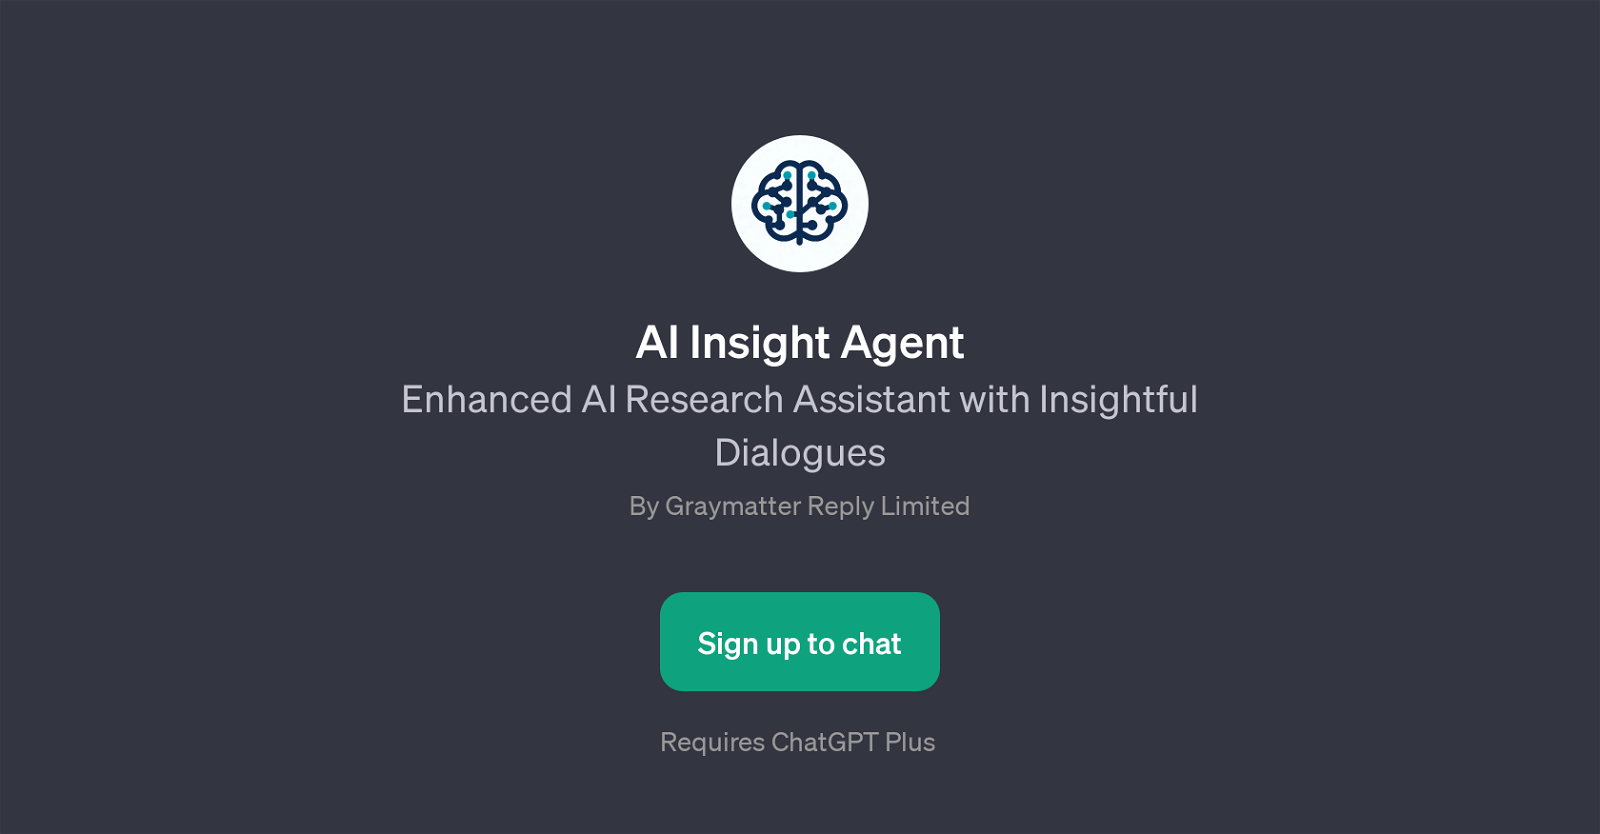 AI Insight Agent website